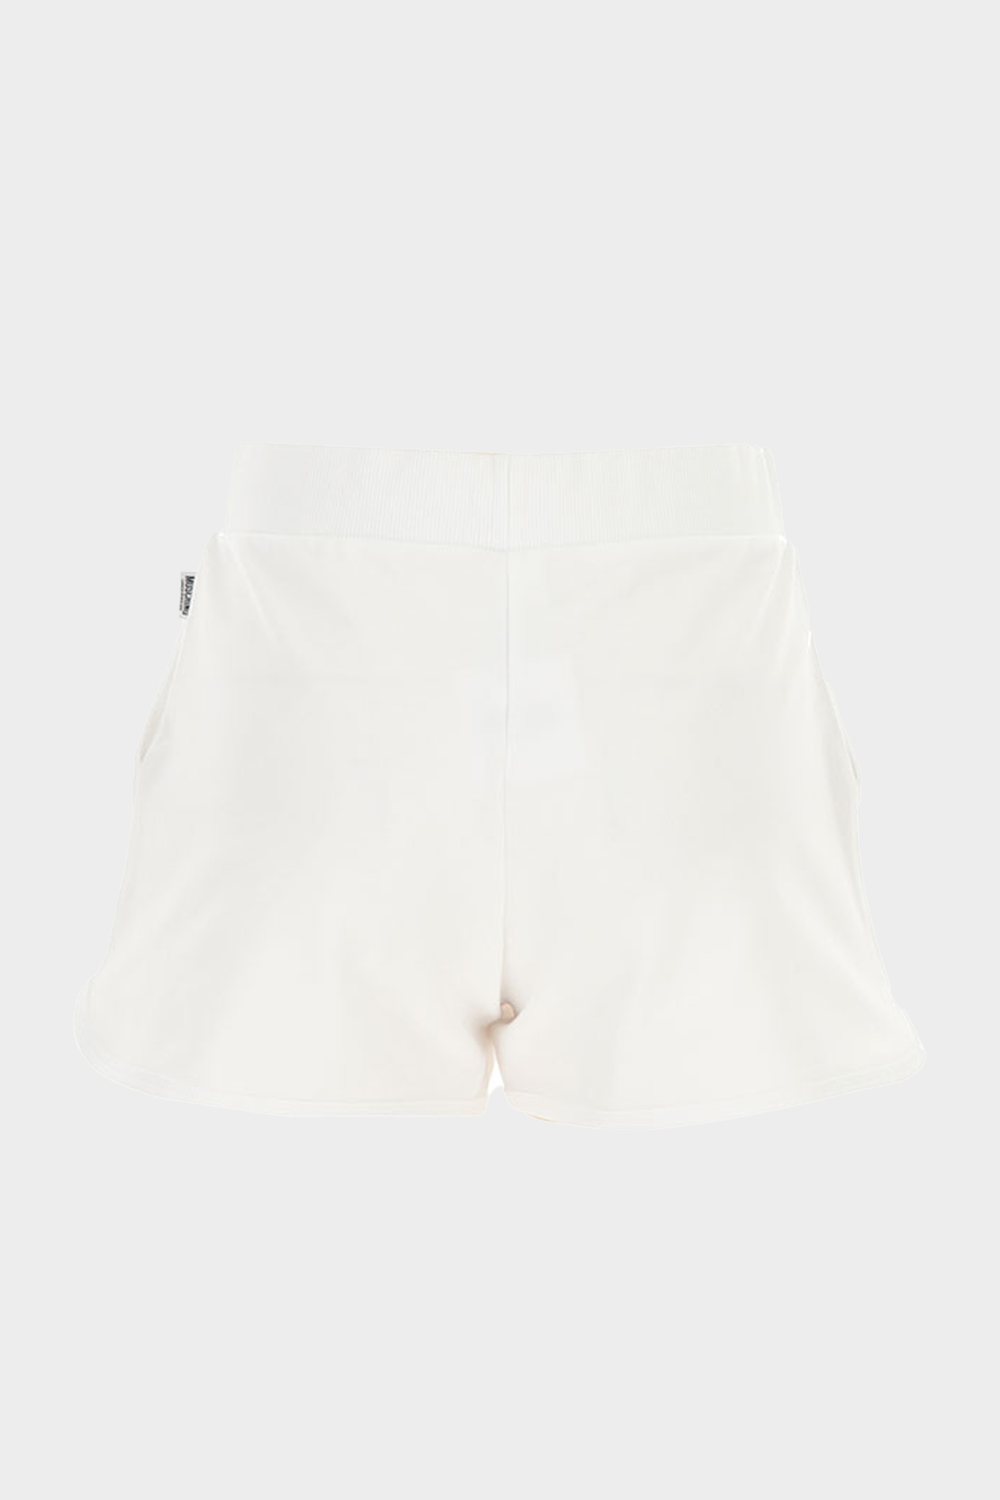 מכנסיים לנשים בצבע לבן MOSCHINO MOSCHINO Vendome online | ונדום .